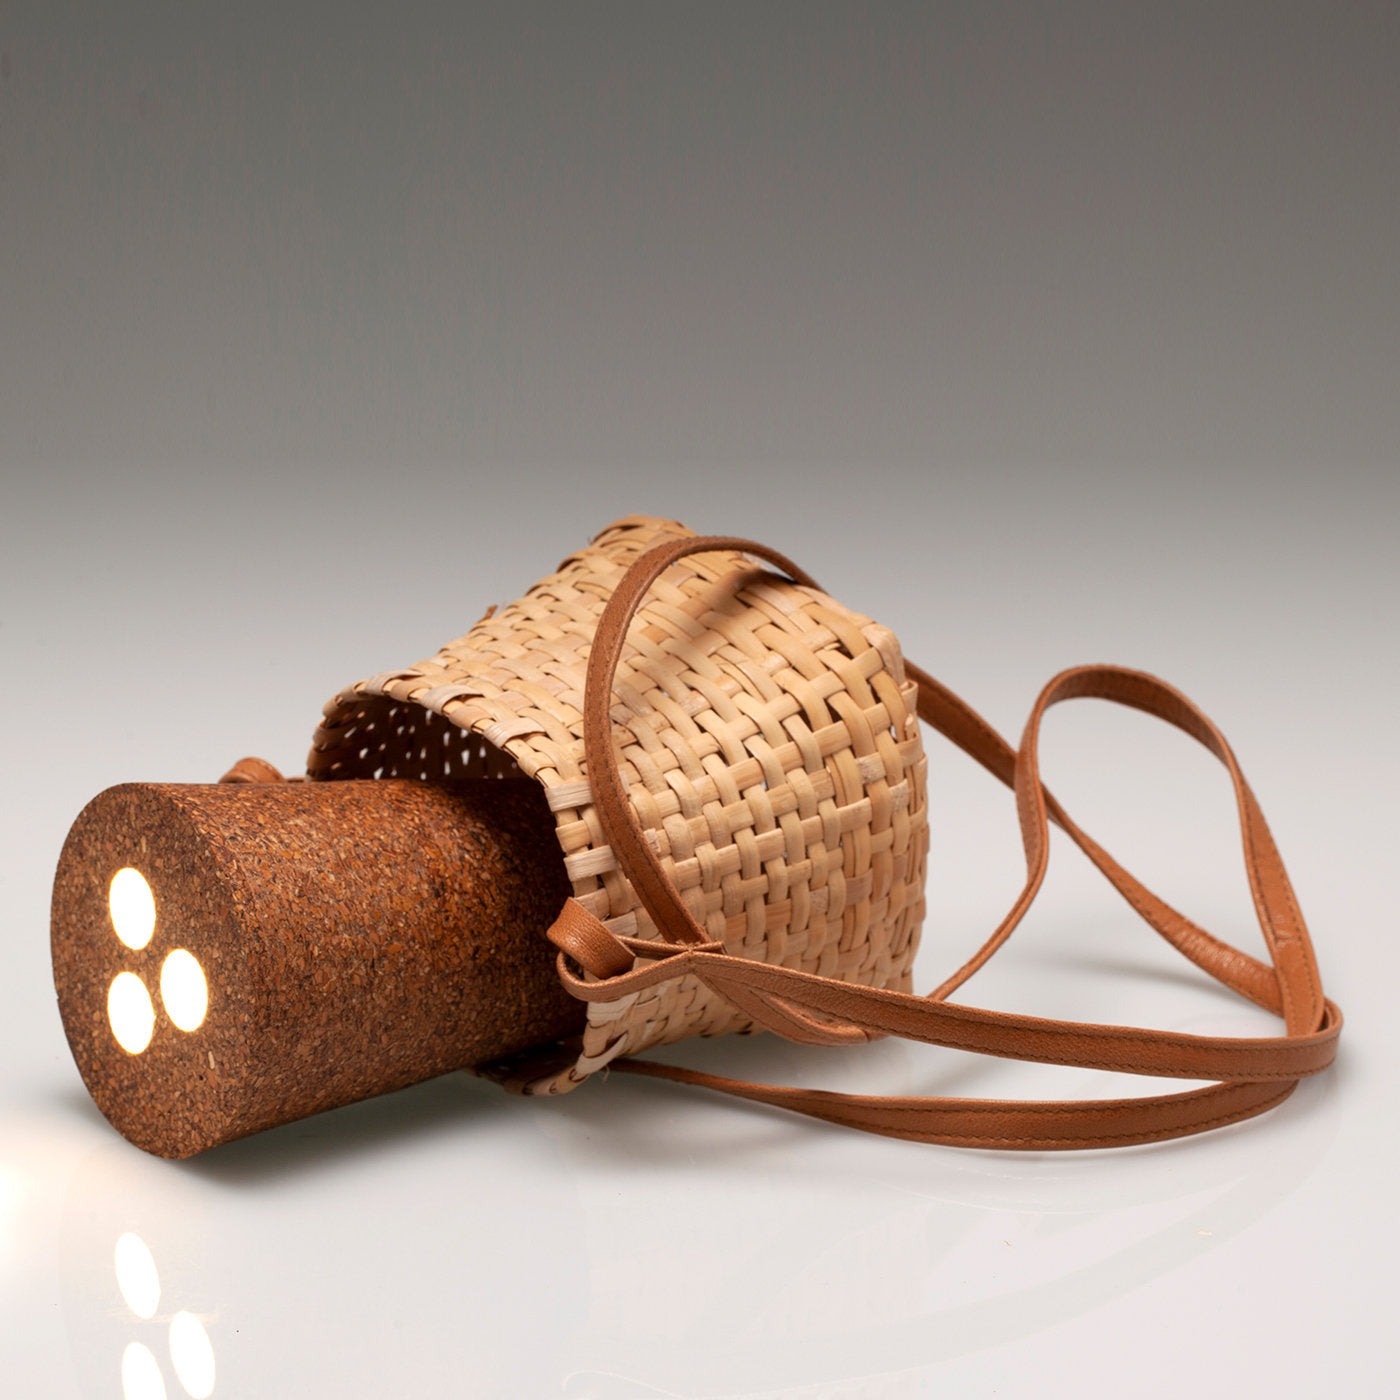 Facciadiluna Portable Lamp by Ilaria Spagnuolo - Alternative view 1